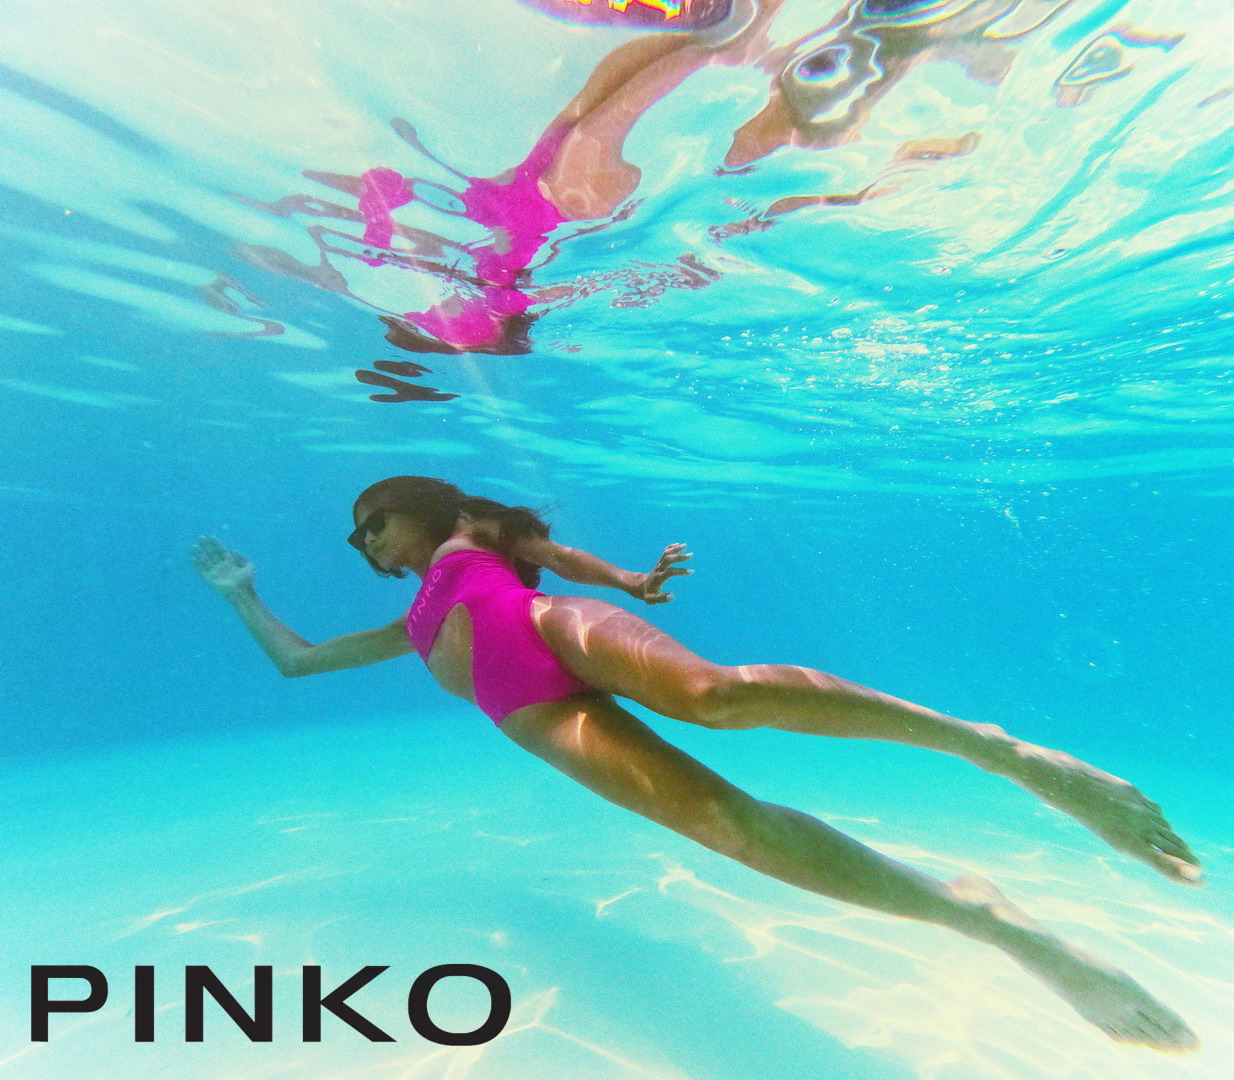 Pinko